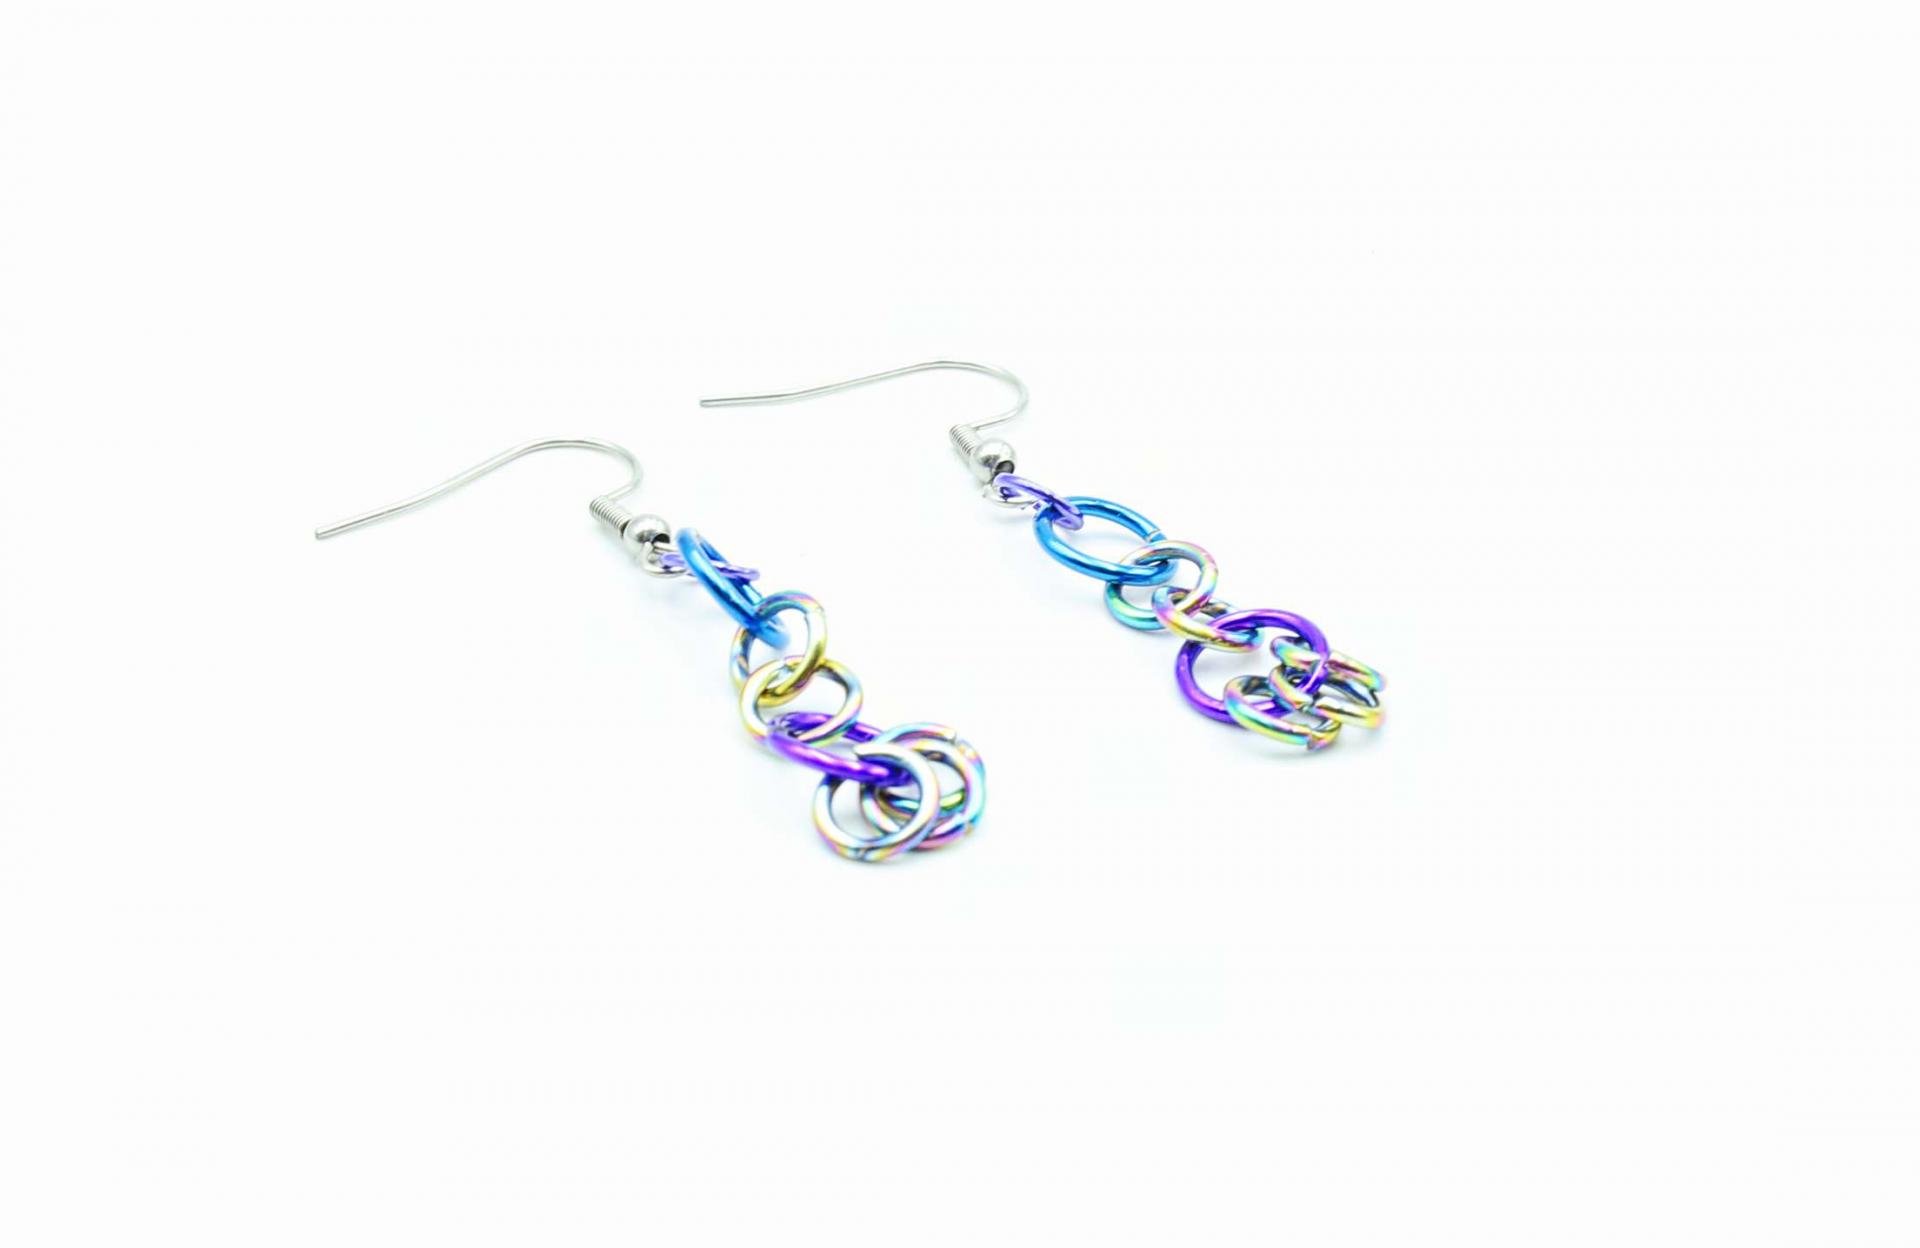 chrissie C jewellery designs earrings circle drop jump ring